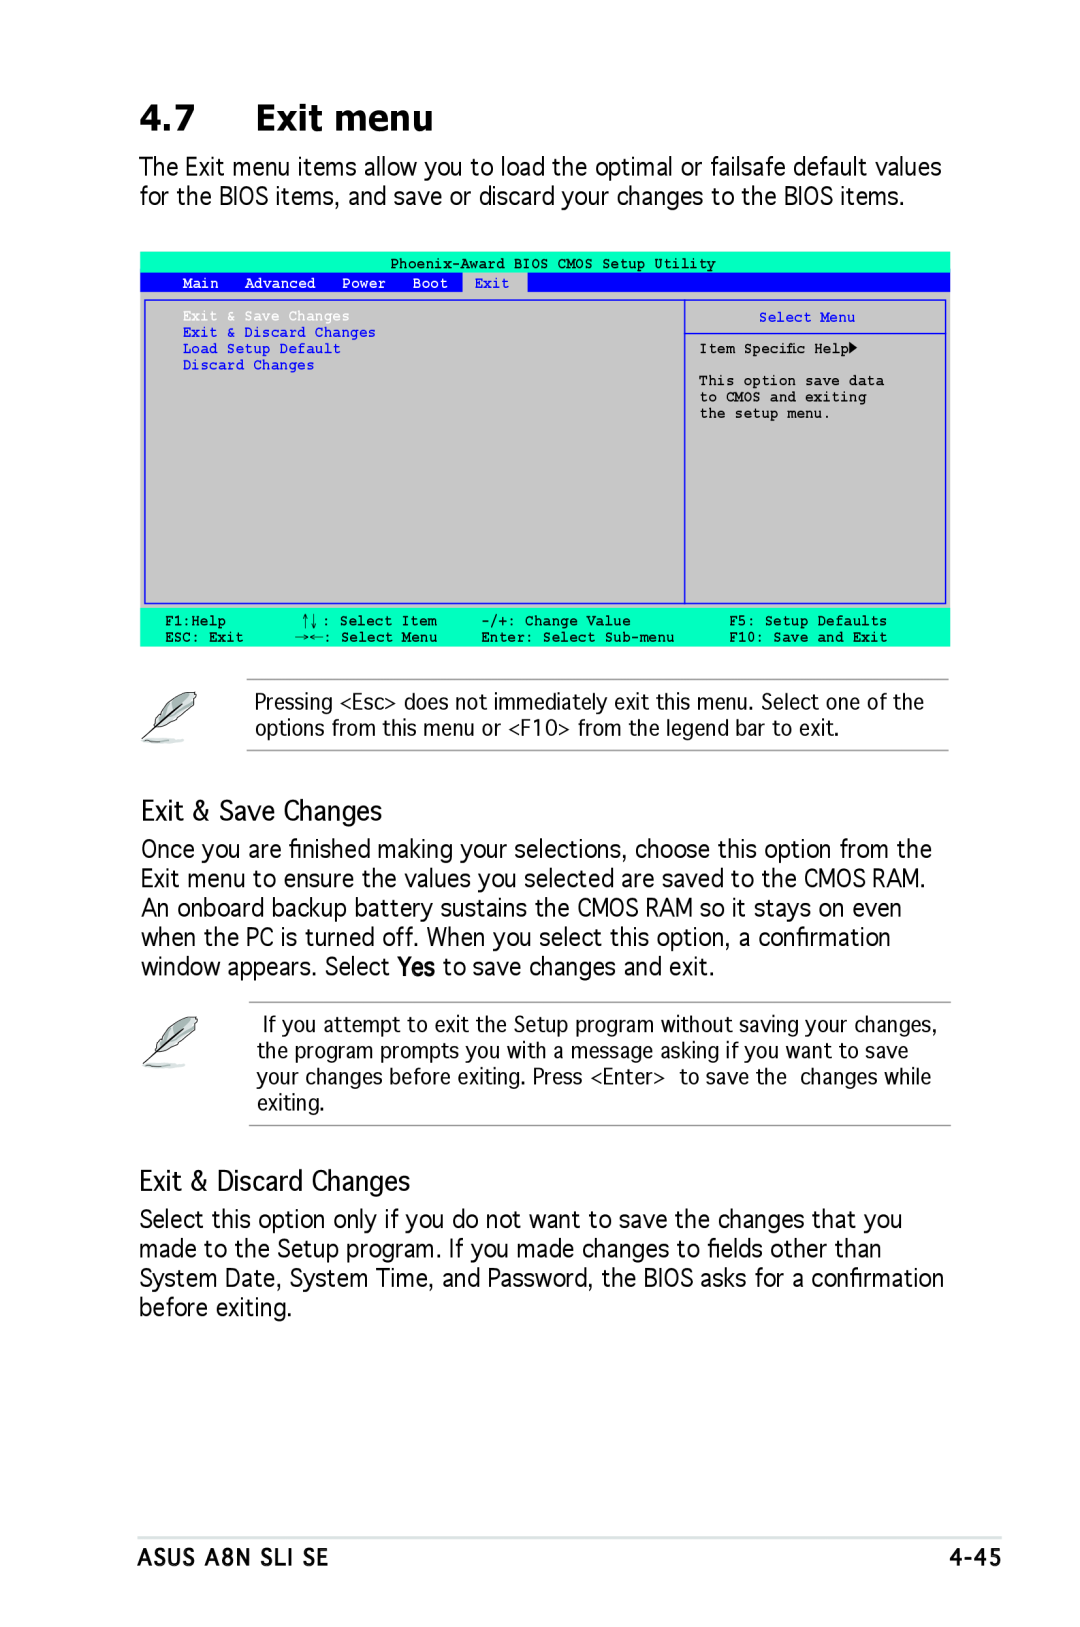 Asus A8N-SLI SE manual Exit menu, Exit & Save Changes, Exit & Discard Changes 